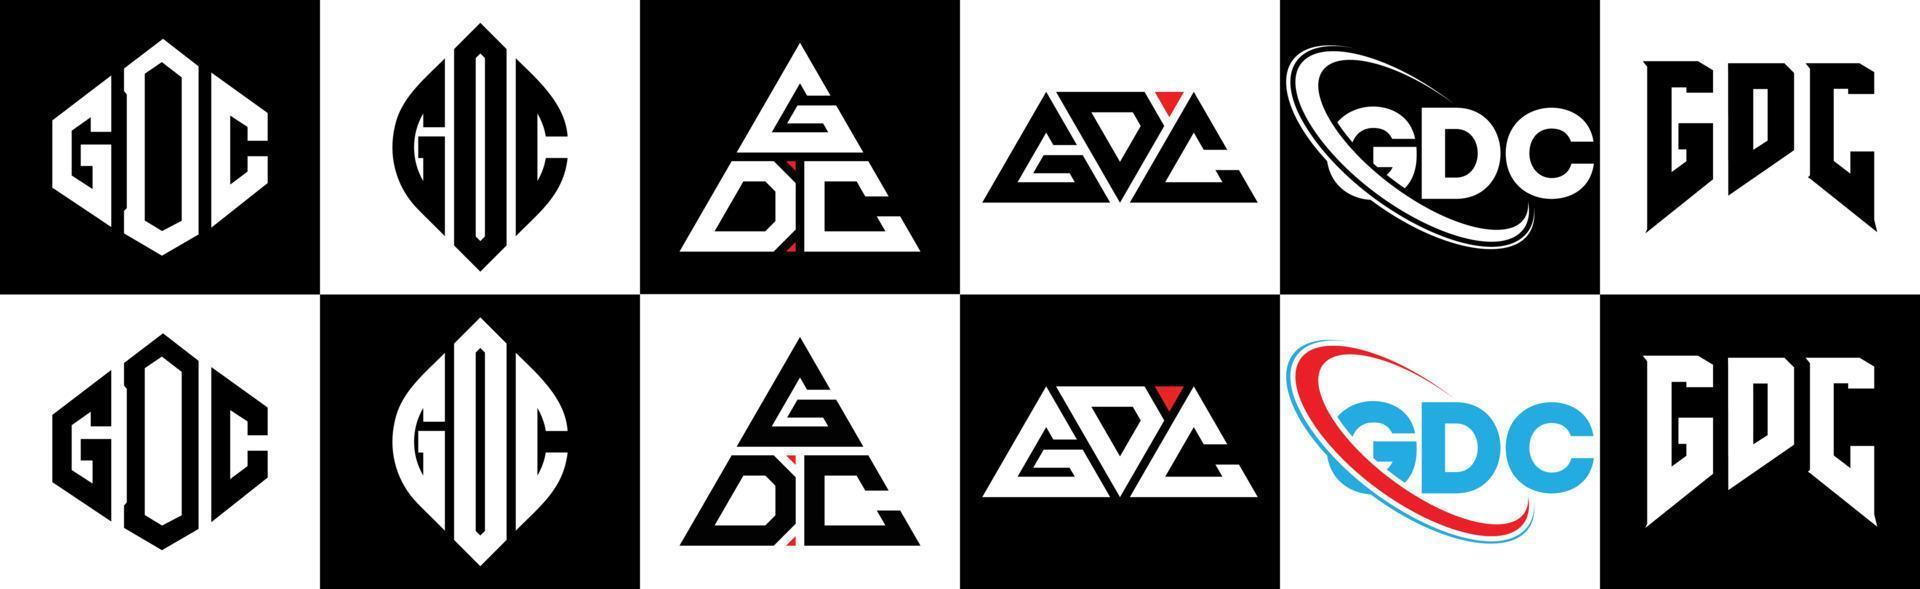 Diseño de logotipo de letra gdc en seis estilos. gdc polígono, círculo, triángulo, hexágono, estilo plano y simple con logotipo de letra de variación de color blanco y negro en una mesa de trabajo. logotipo minimalista y clásico de gdc vector